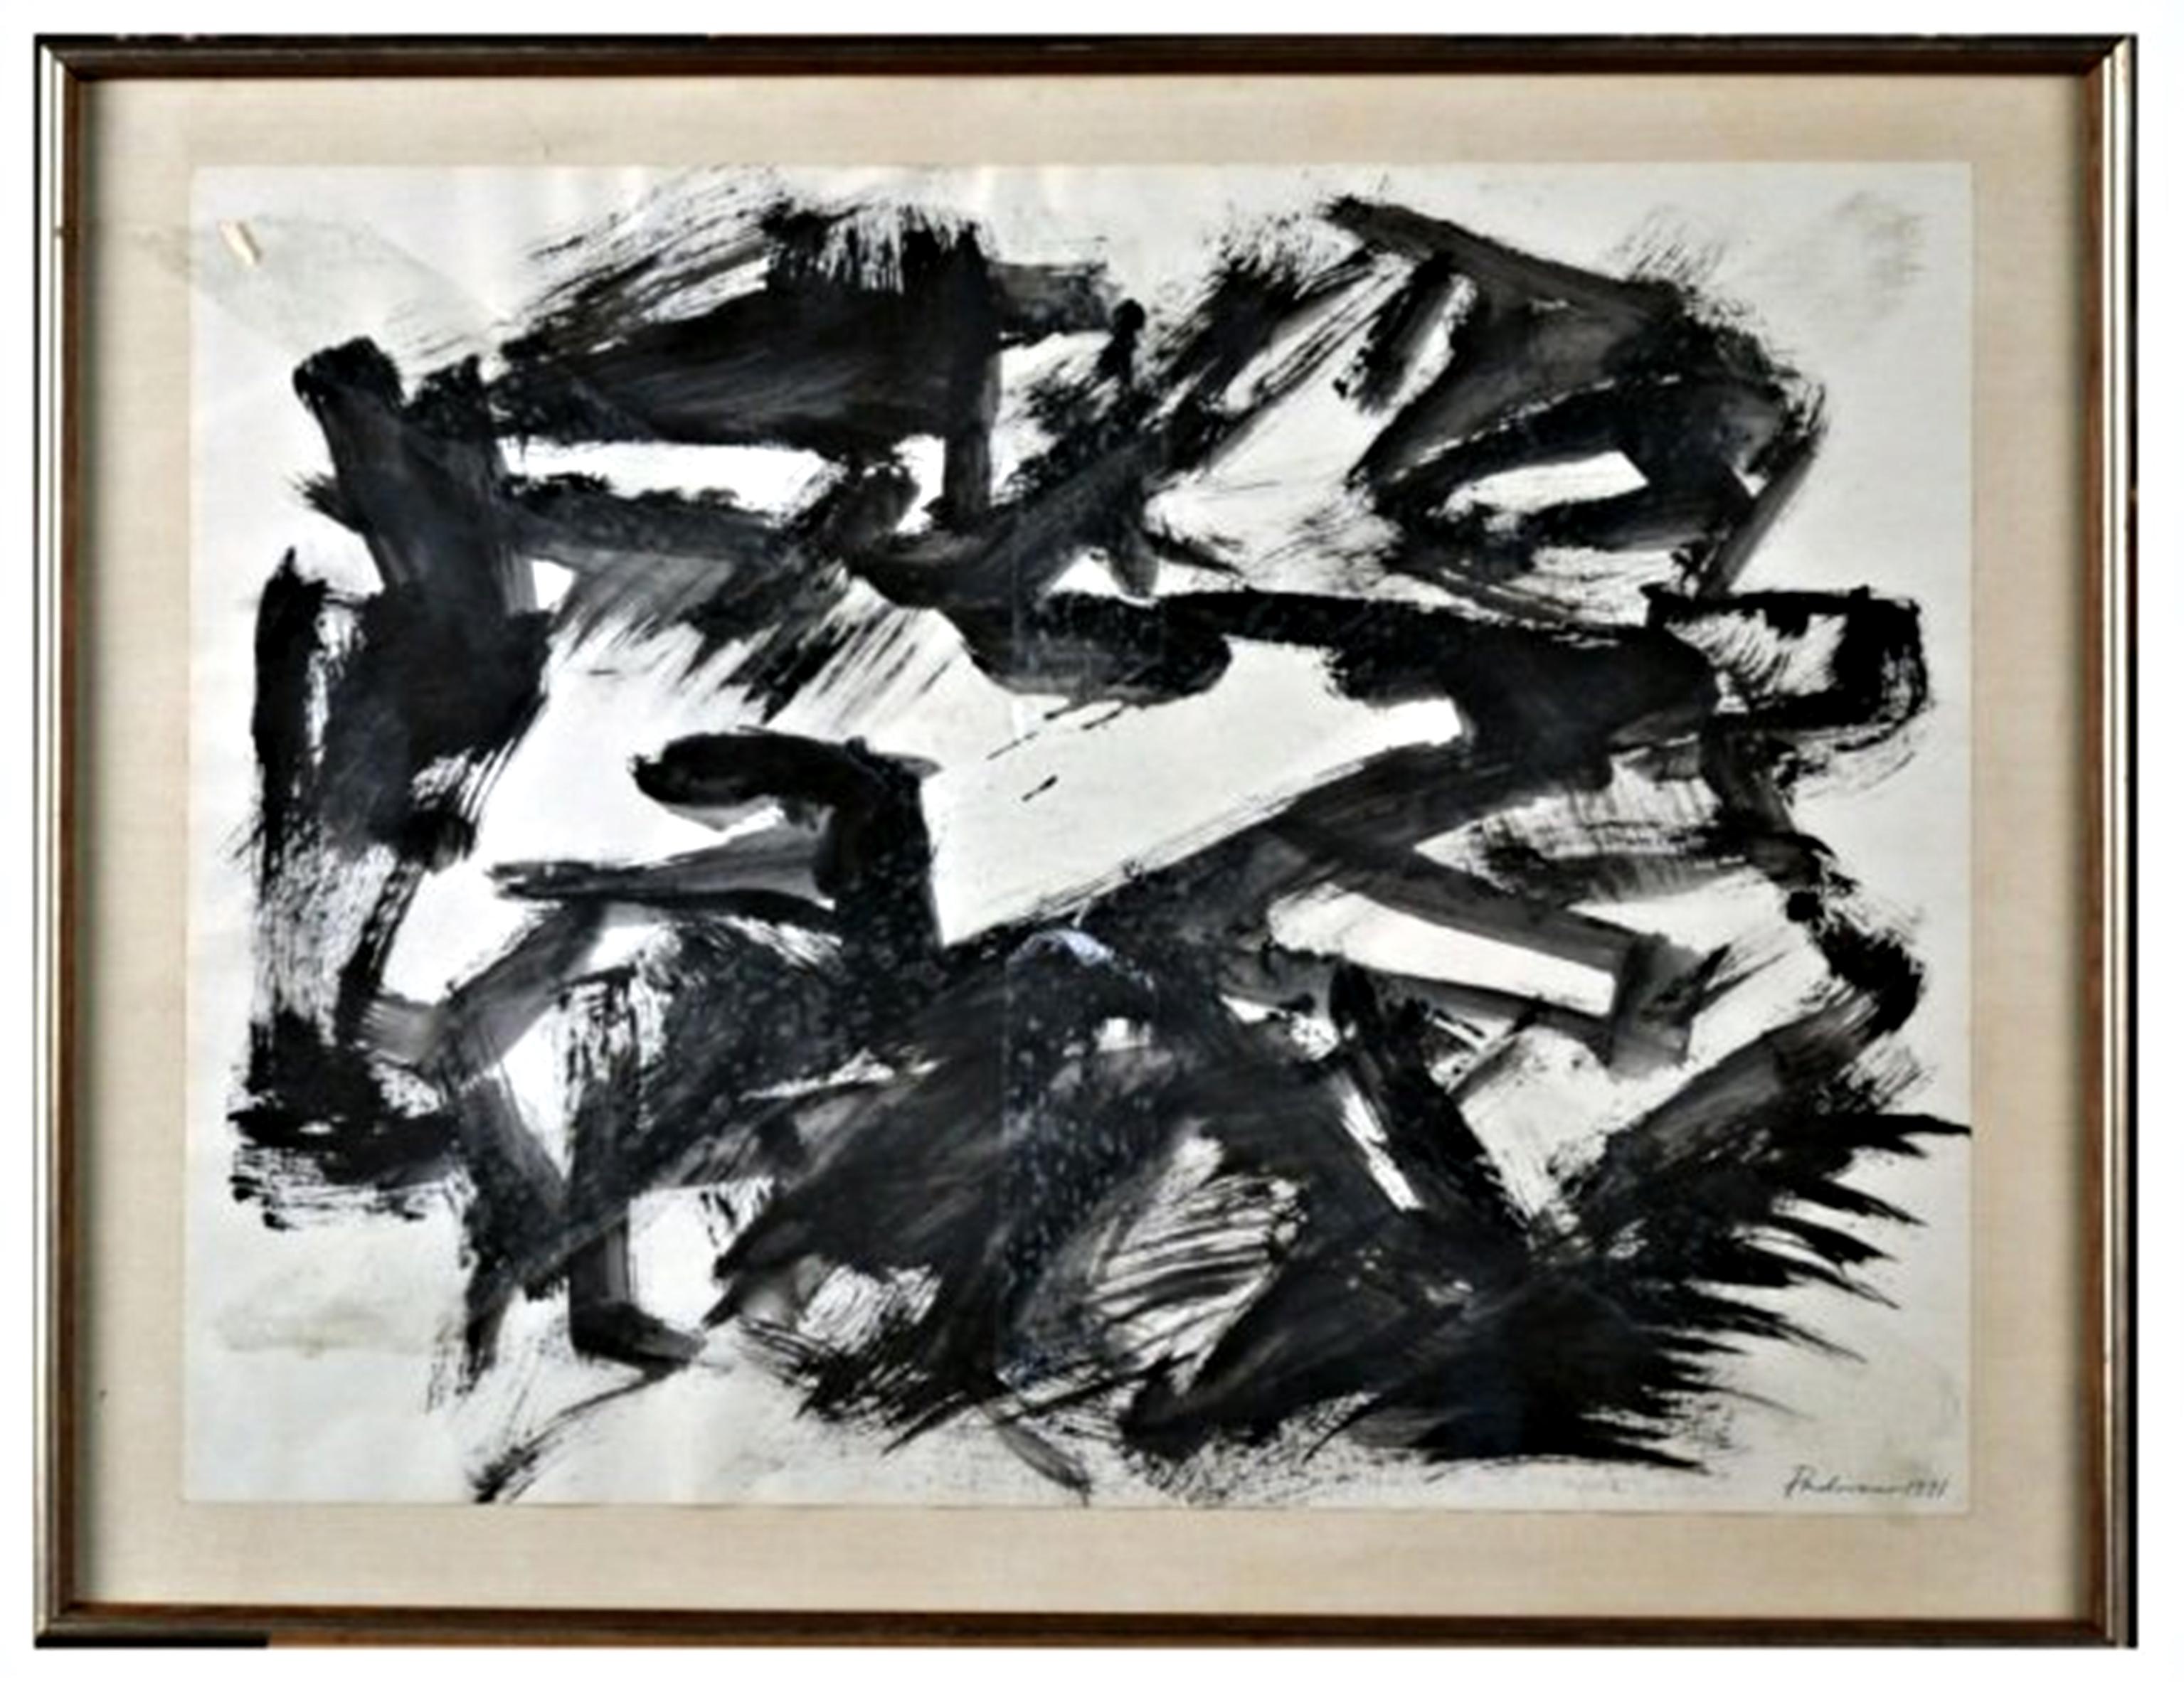 Abstrakt-expressionistische Zeichnung ohne Titel des Bildhauers, signiert, 1970er Jahre